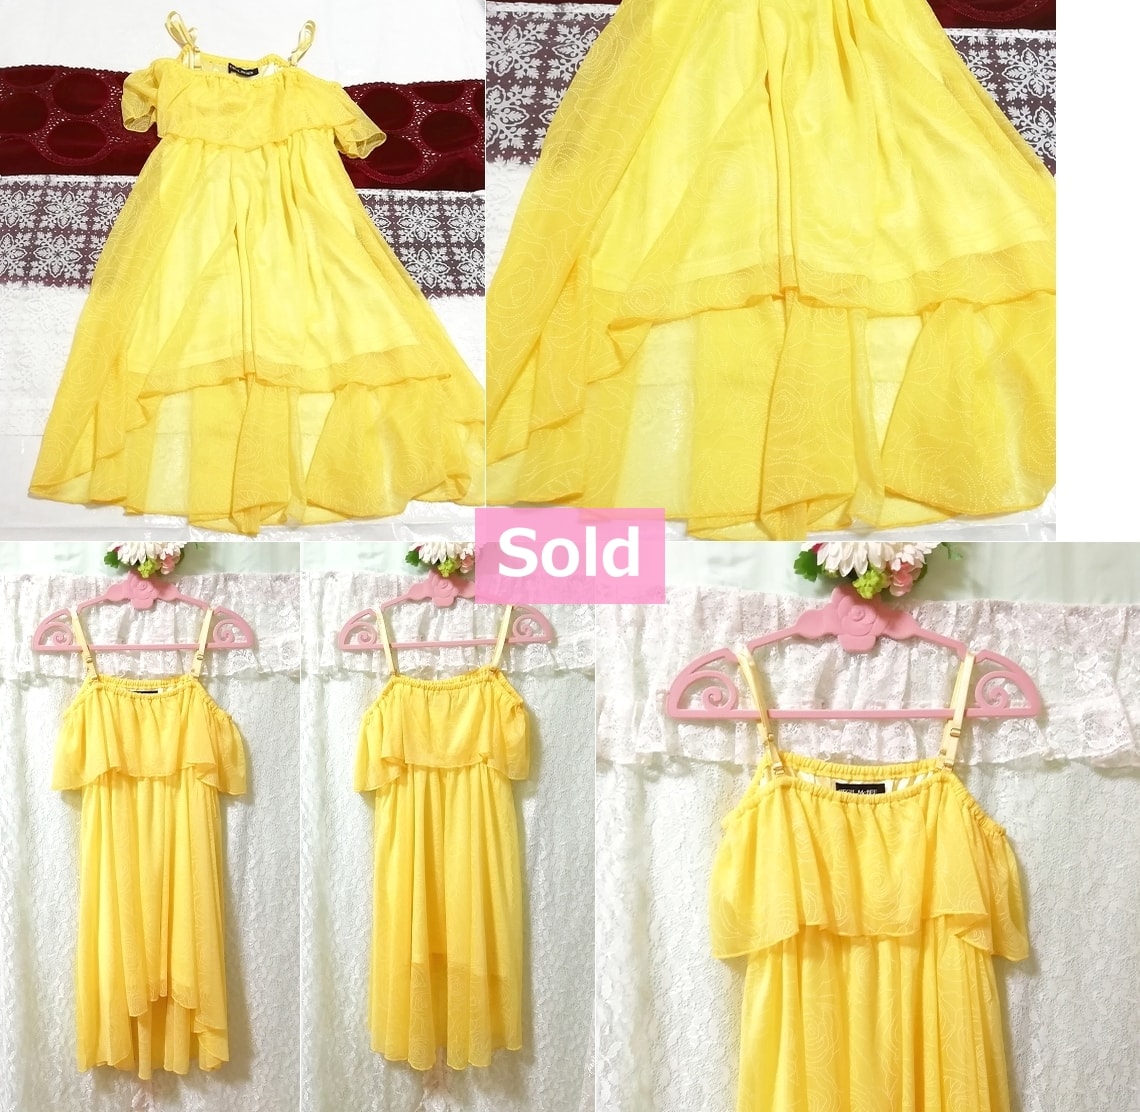 Желтое шифоновое платье-камзол CECIL McBEE, расклешенное сплошное платье